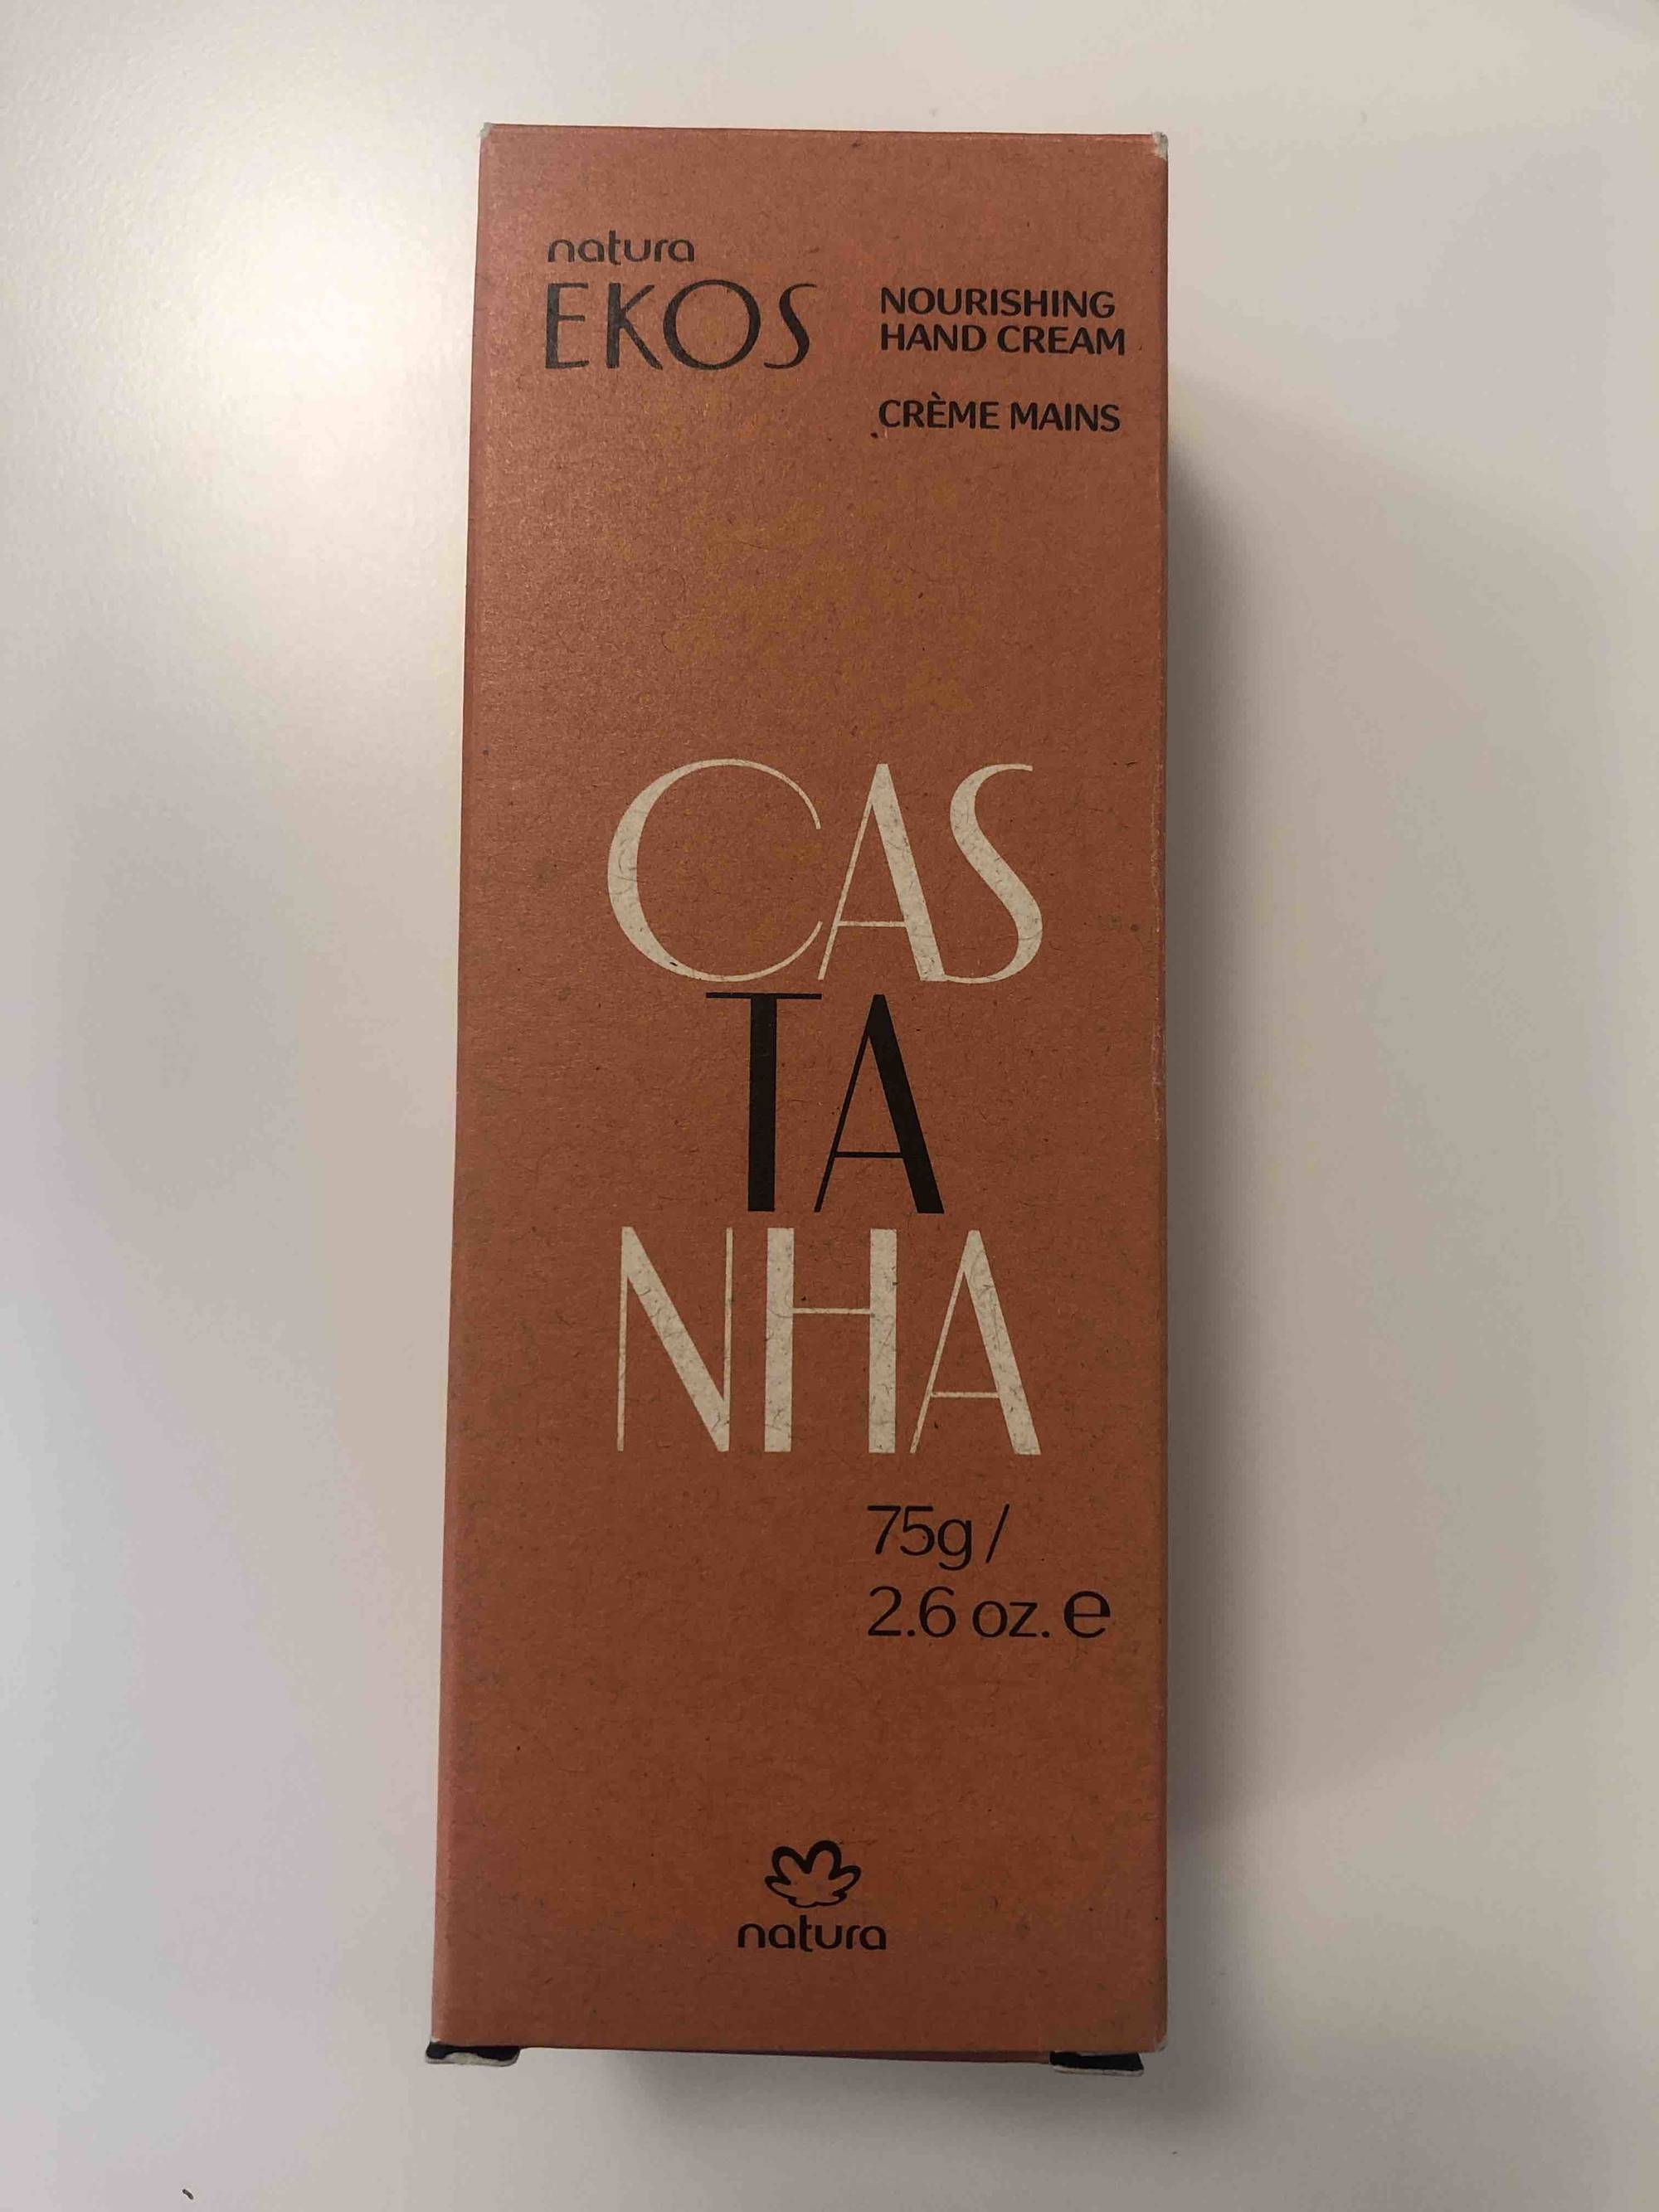 NATURA EKOS - Castanha - Crème mains